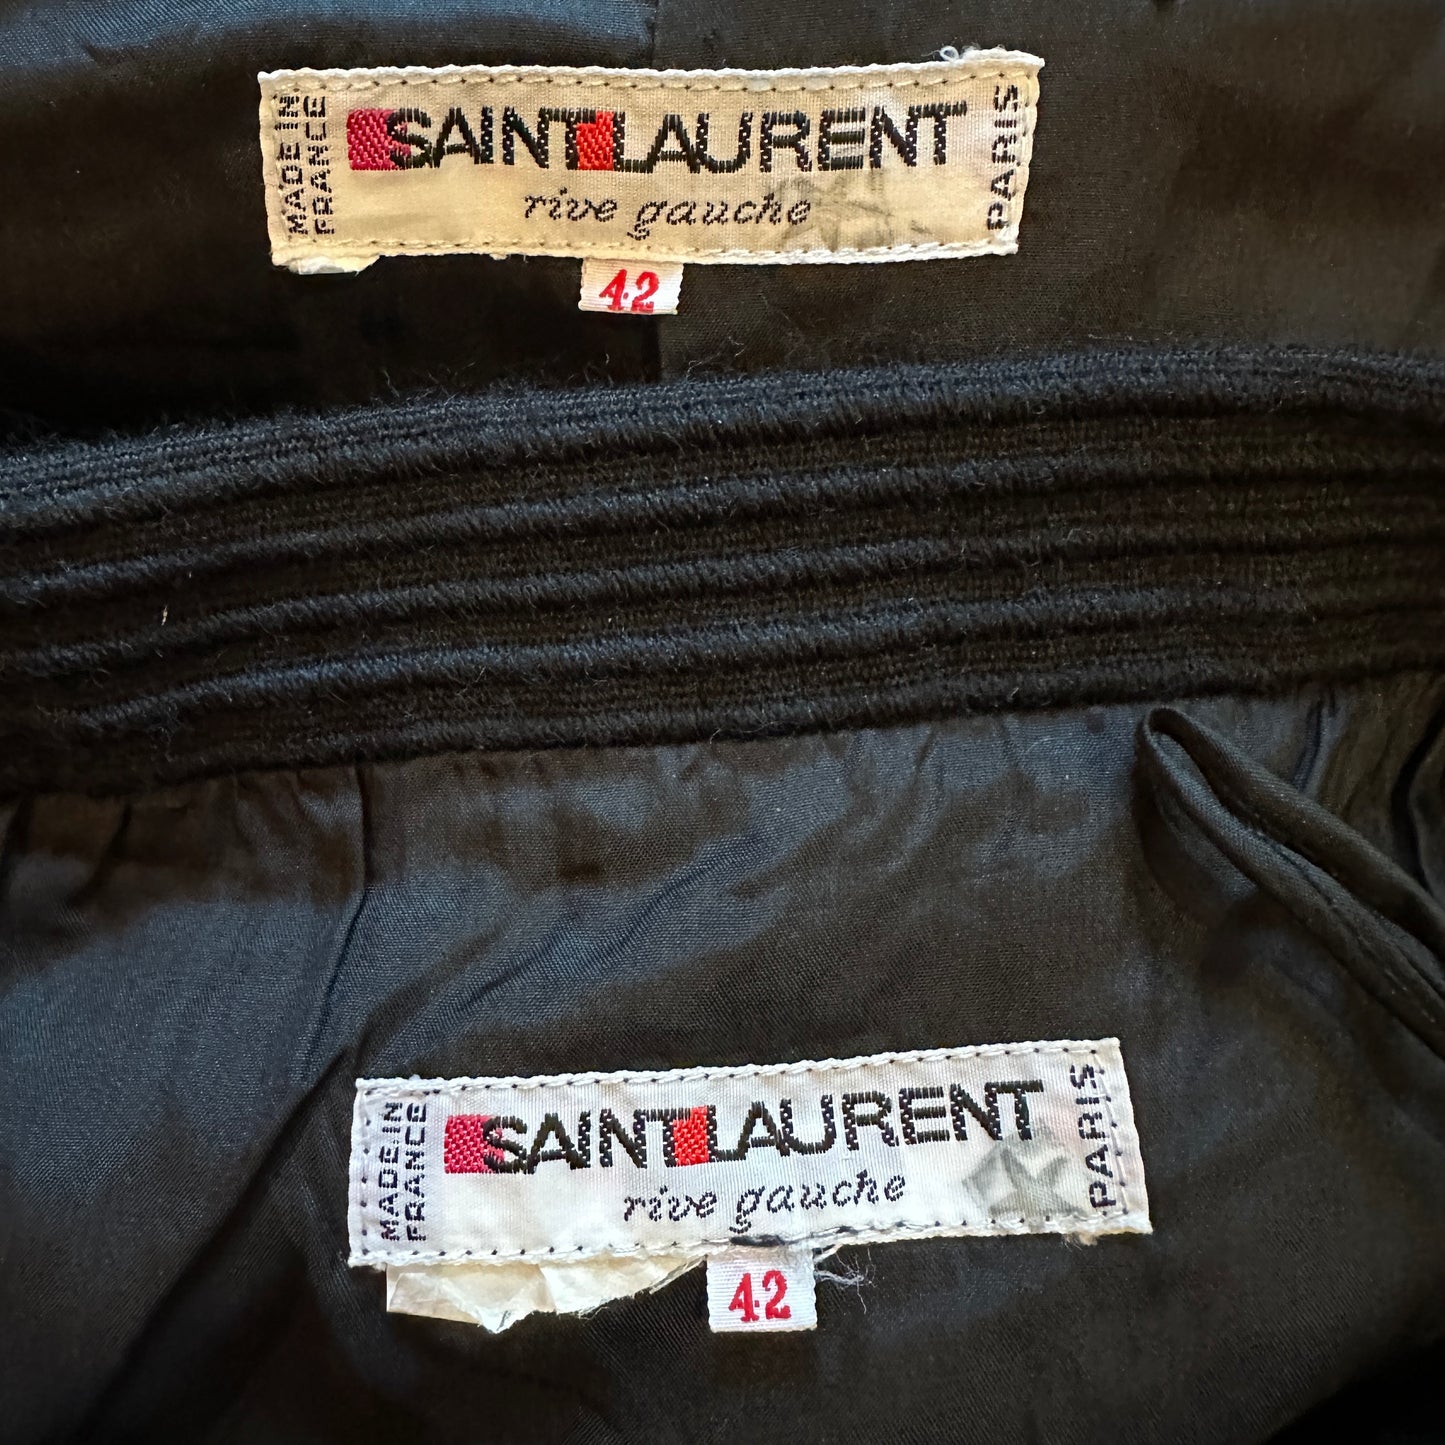 Yves Saint Laurent Rive Gauche C.1988 Skirt Suit Set